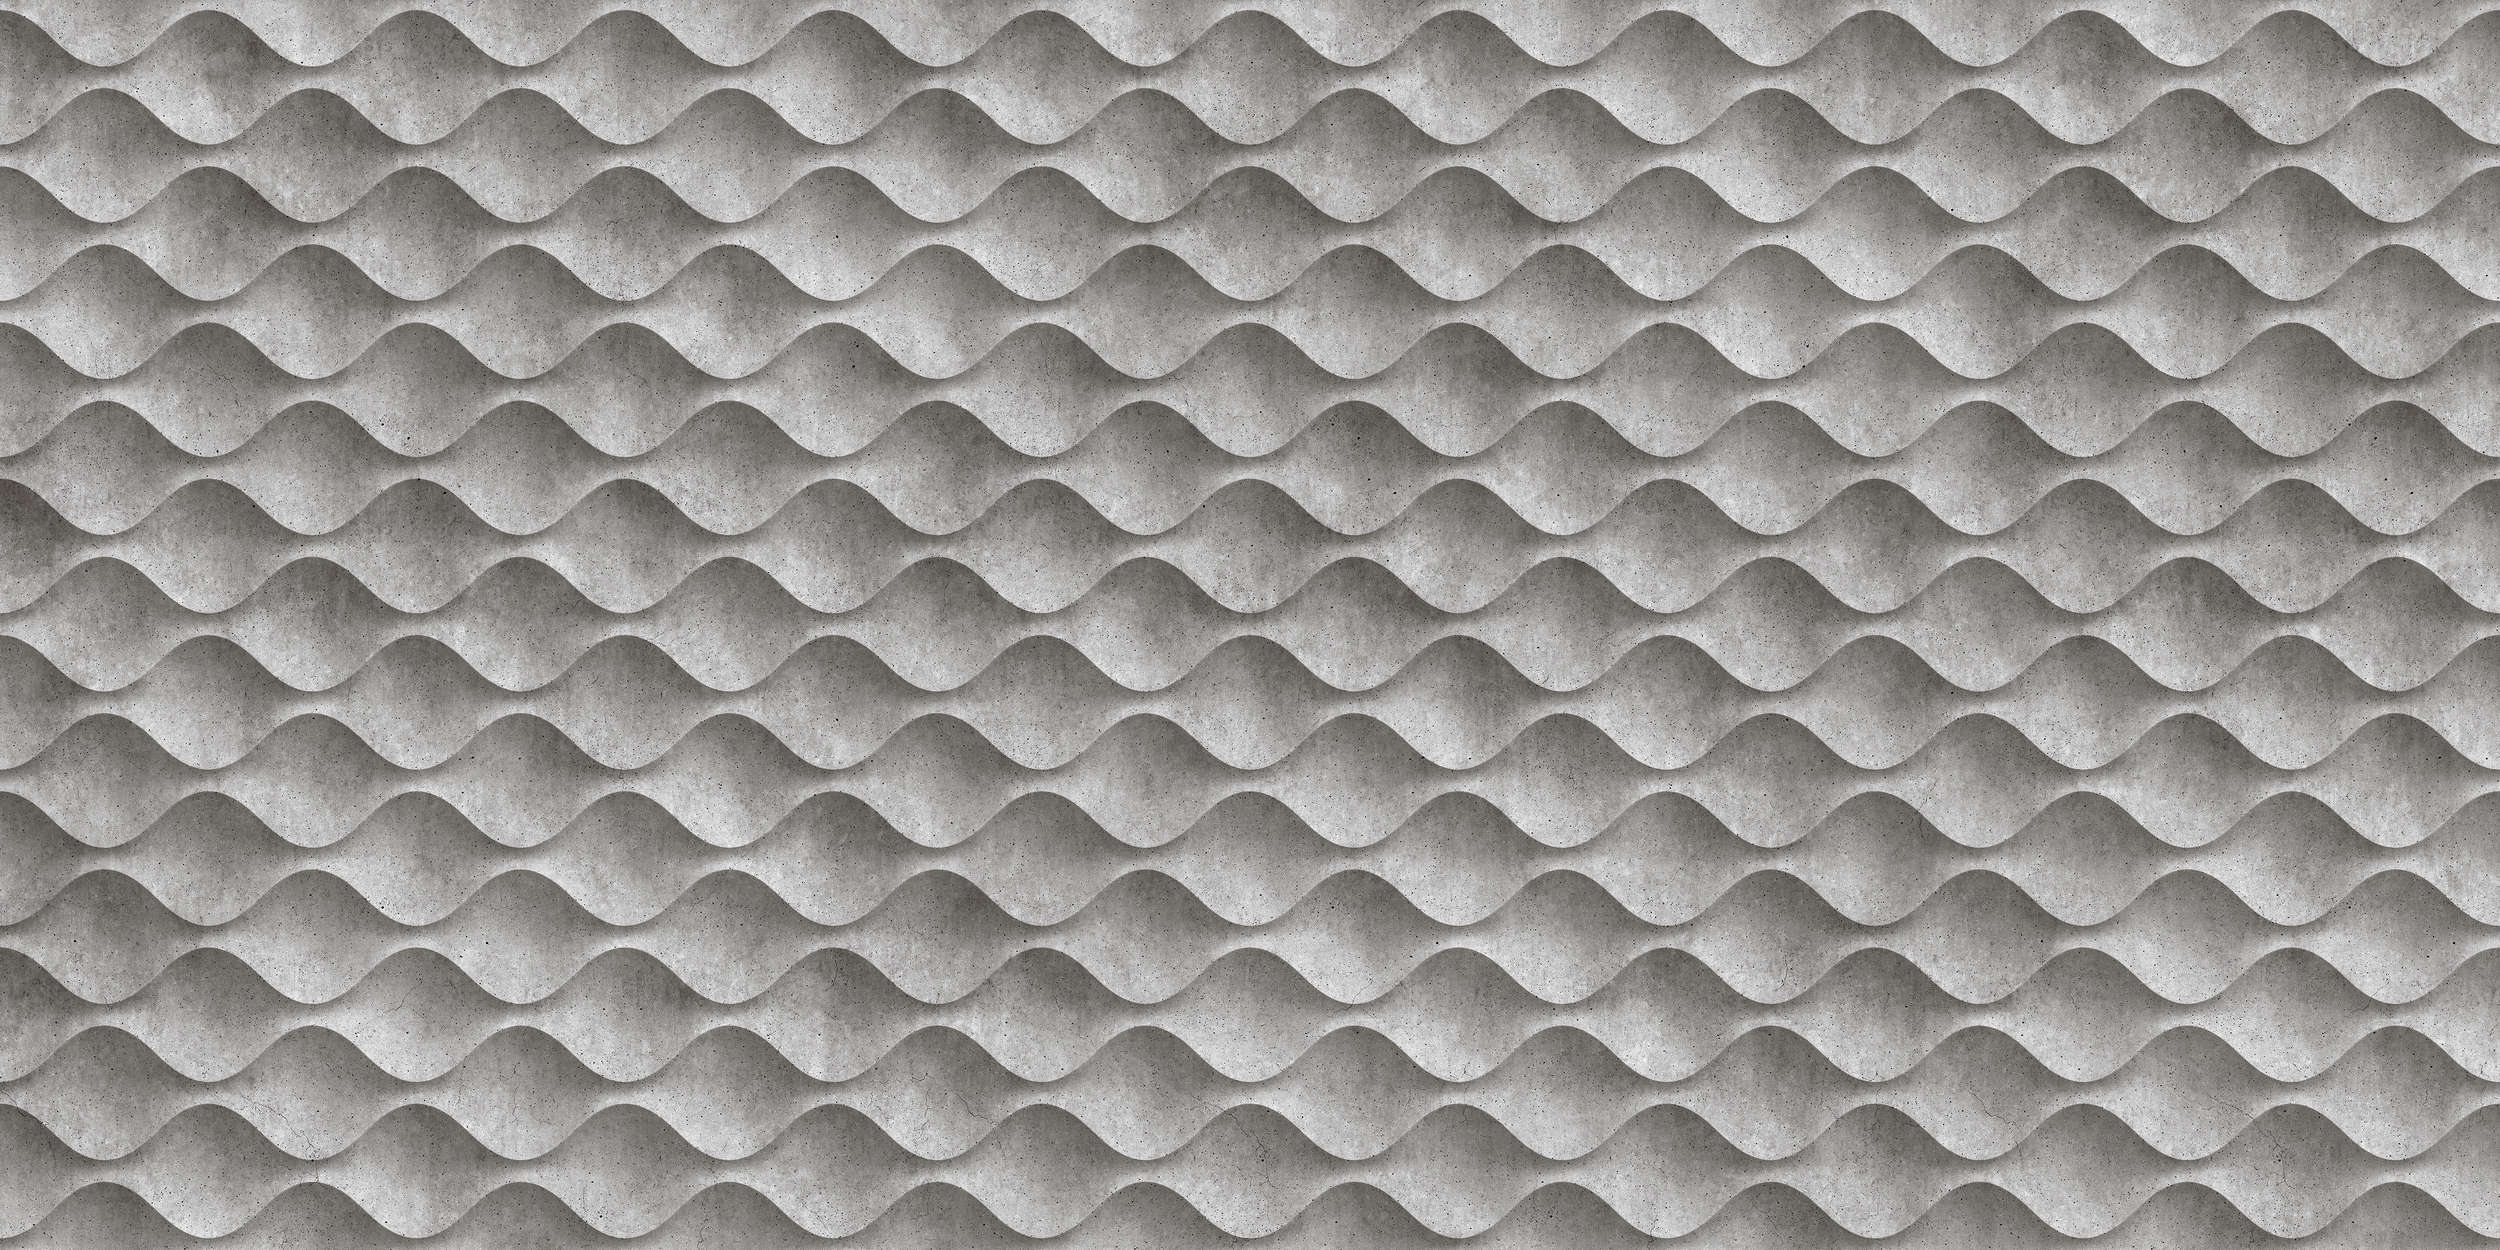             Concrete 1 - Coole 3D Beton-Wellen Fototapete – Grau, Schwarz | Struktur Vlies
        